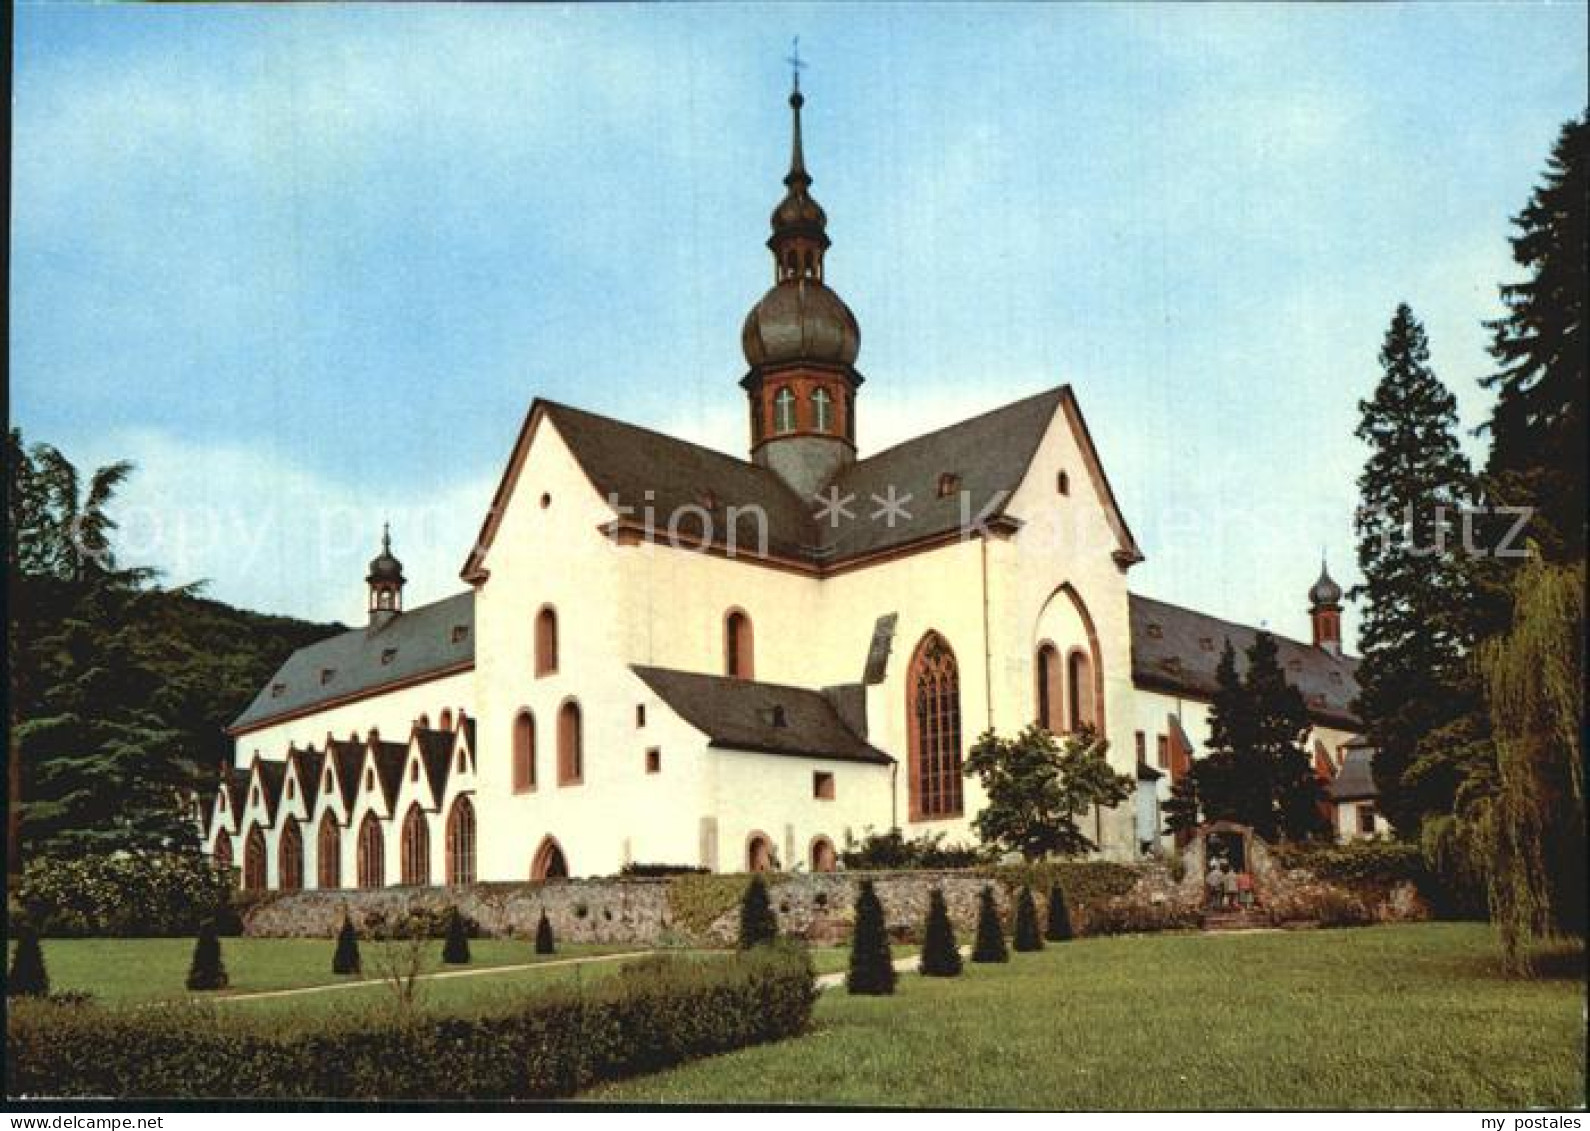 72563615 Eberbach Rheingau Kloster Ehemalige Zisterzienser-Abtei Eberbach Rheing - Eltville